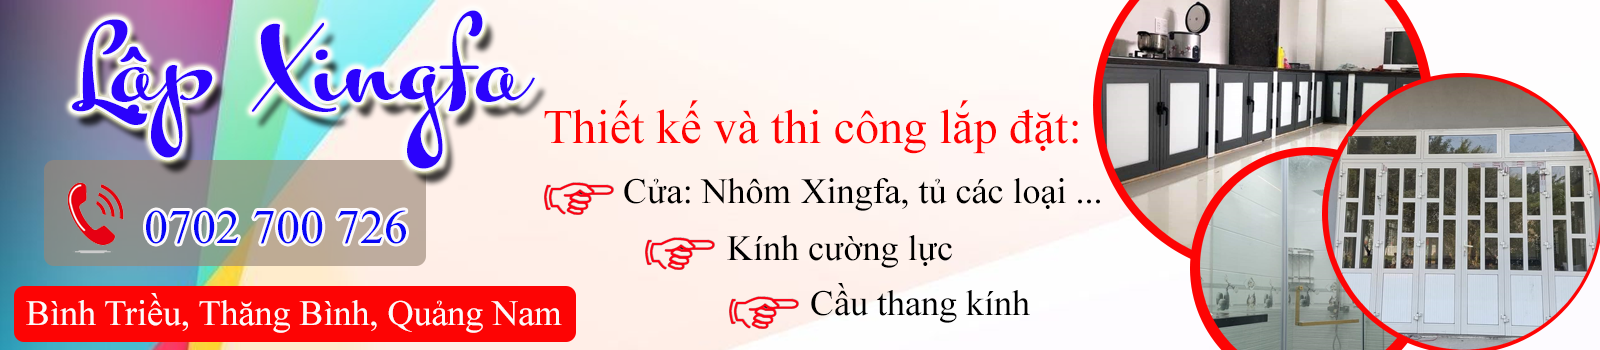 Thi công lắp đặt cửa nhôm Xingfa tại Quảng Nam